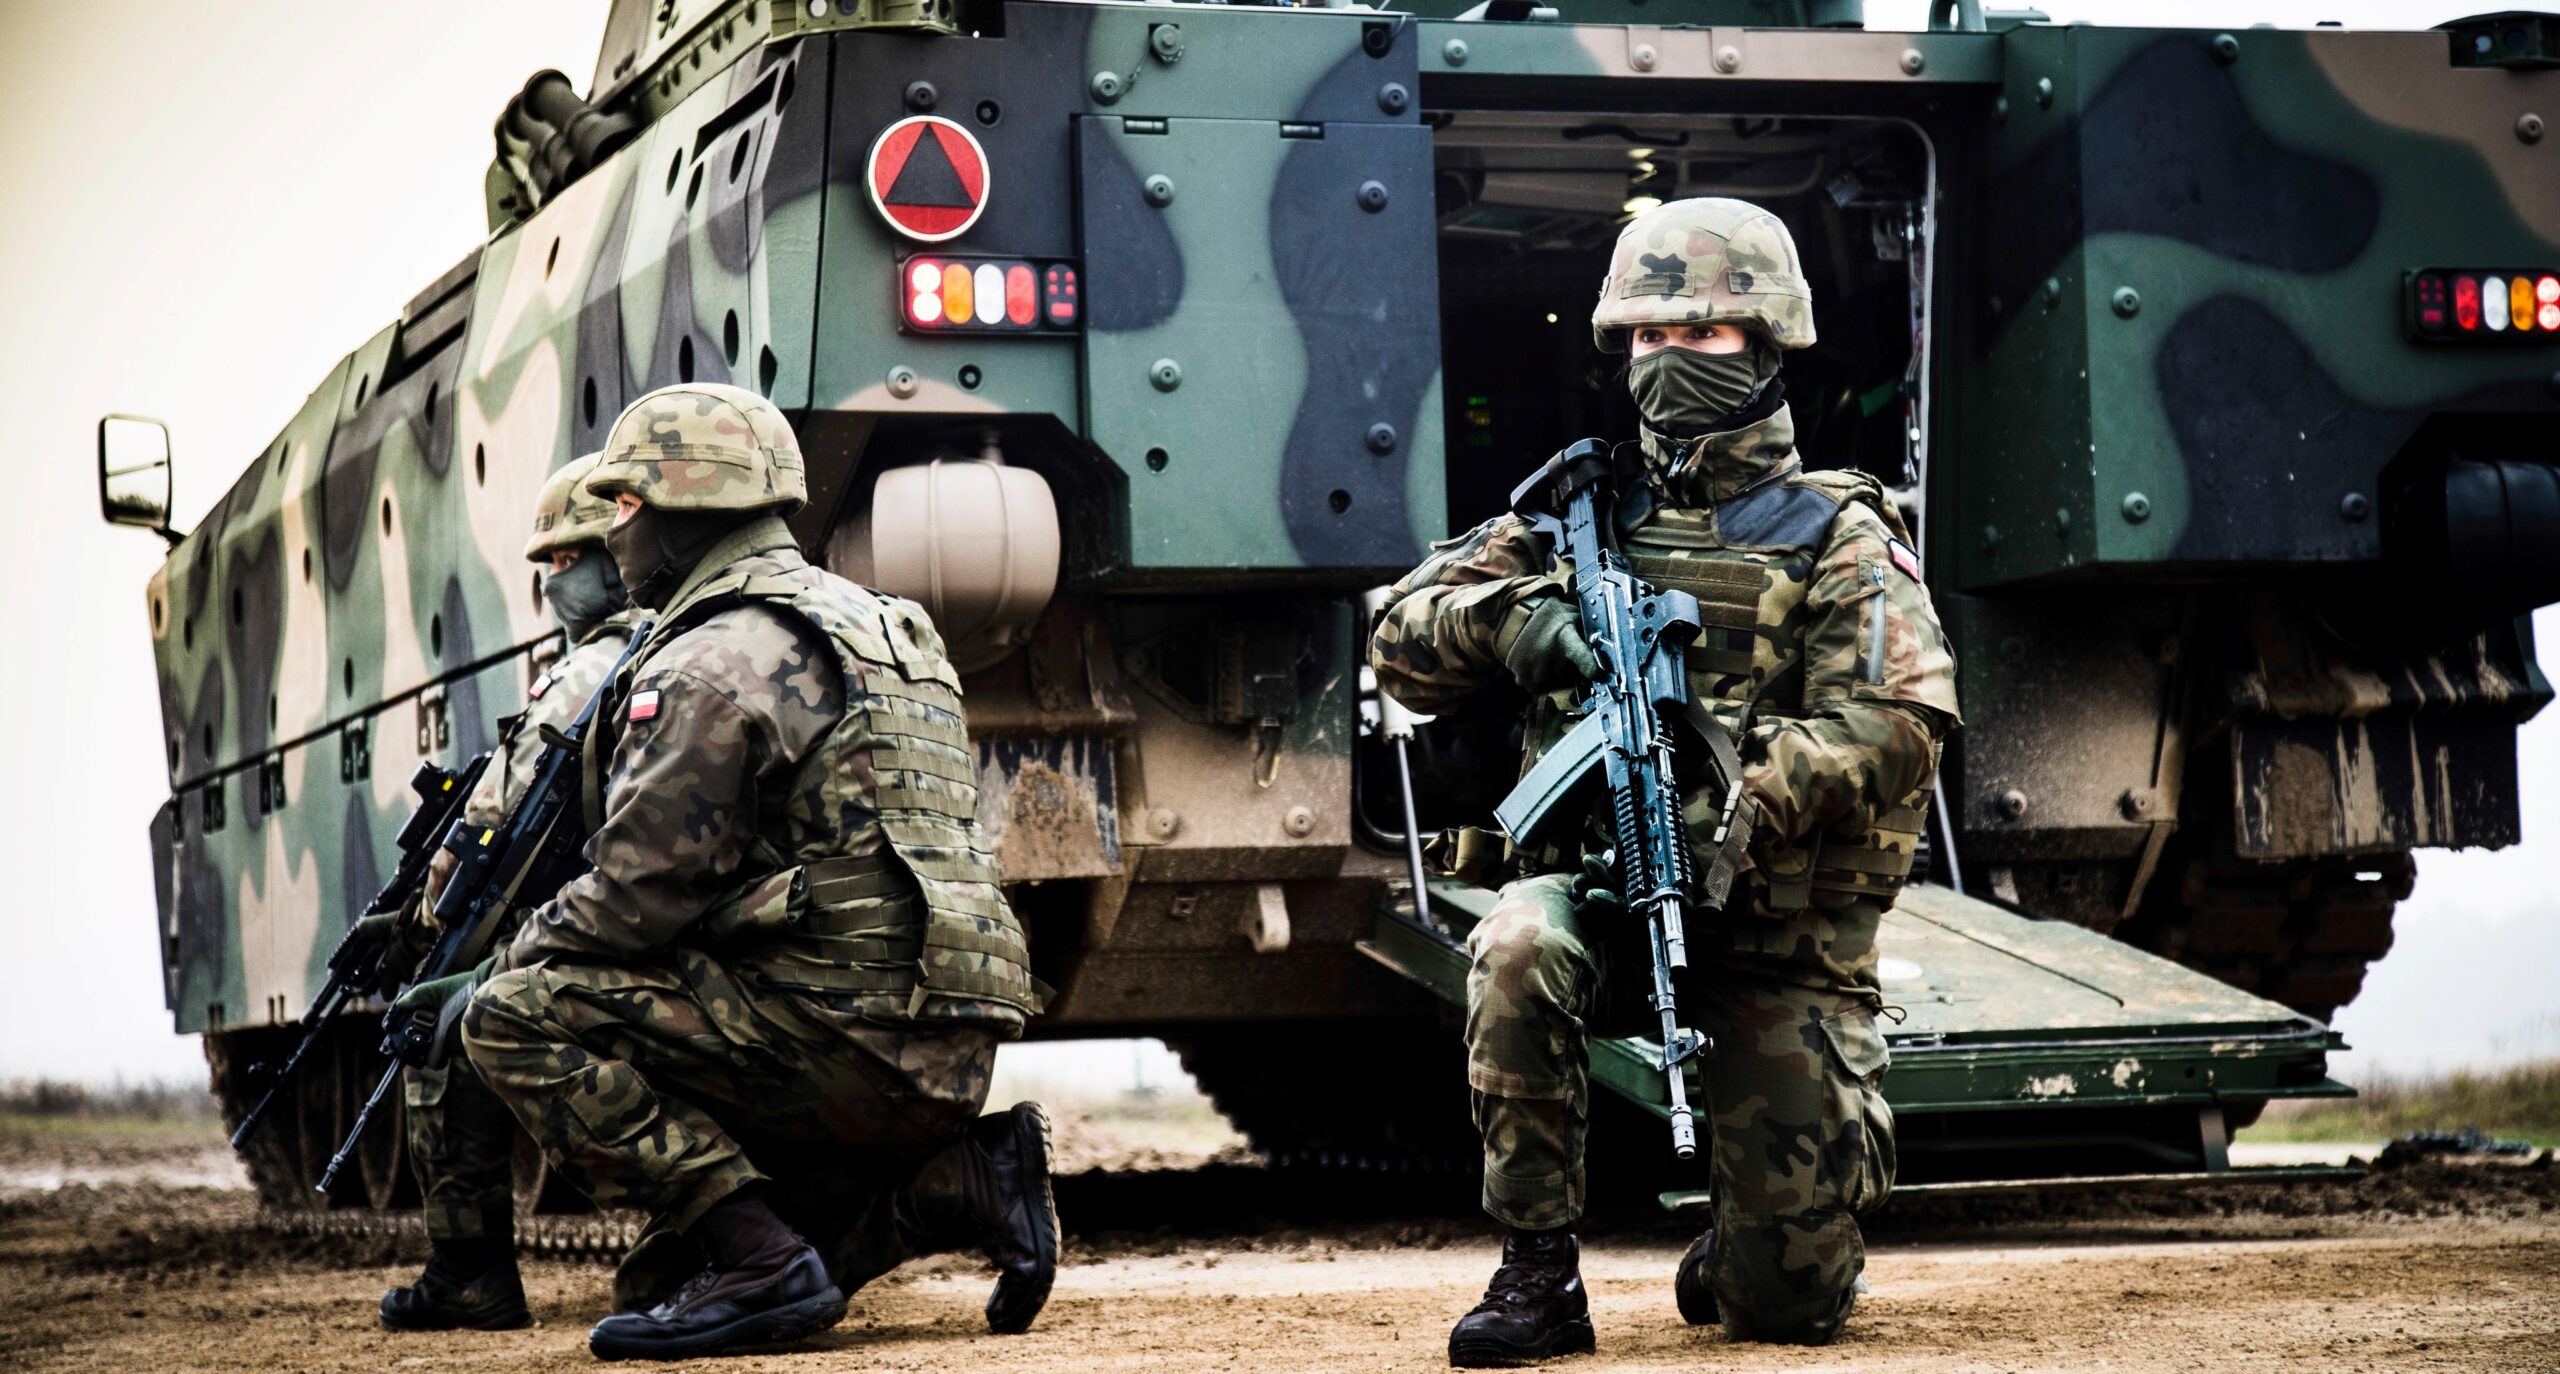 Η Πολωνία ξεκινά το πρόγραμμα «Διακοπές με τον στρατό» για να αυξήσει την δύναμή της για το καλοκαίρι